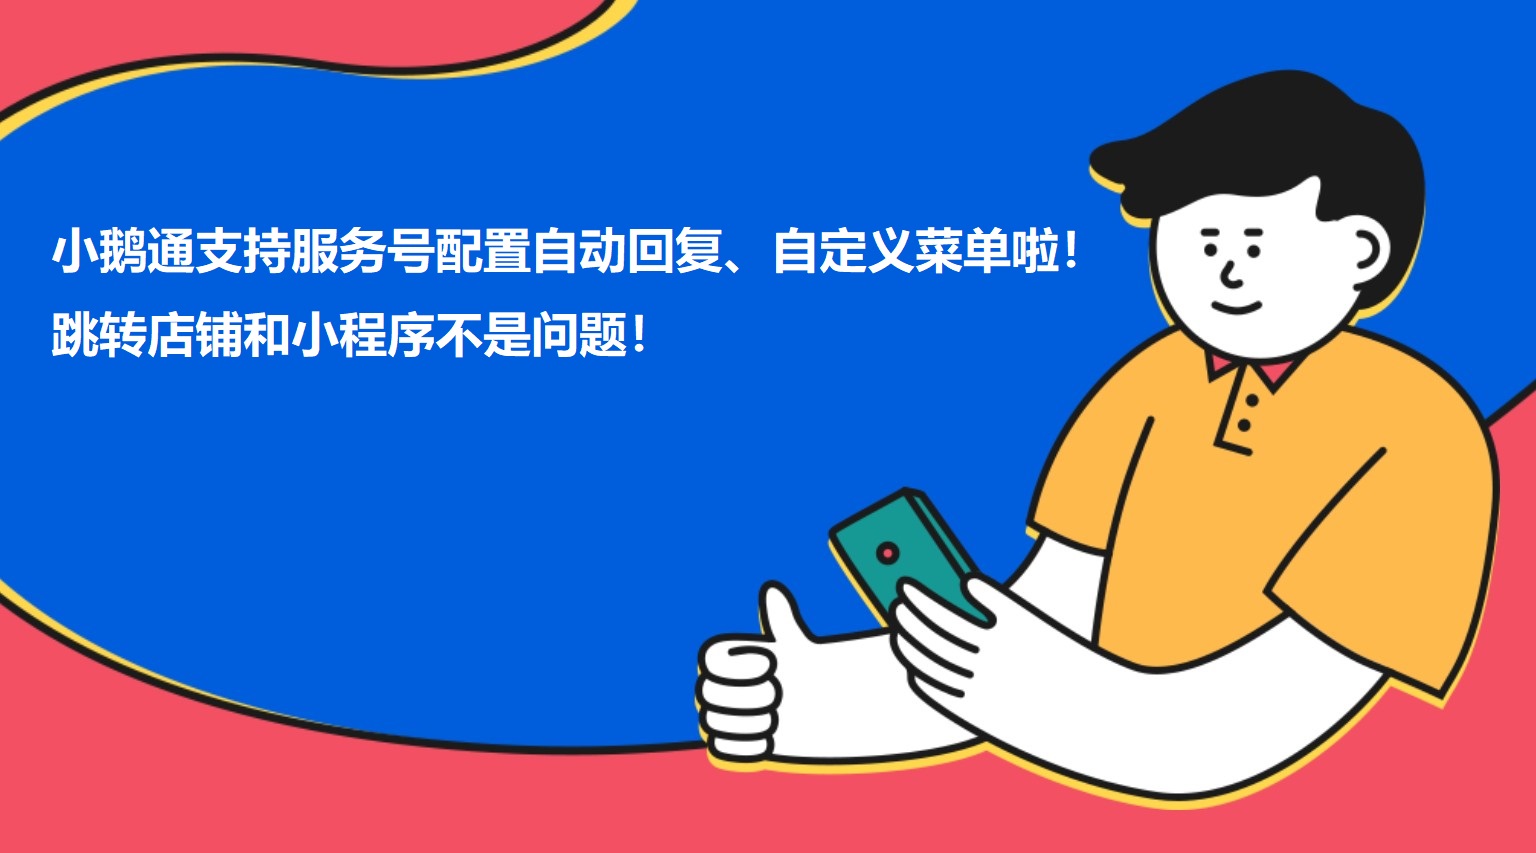 莆田小鹅通支持服务号配置自动回复、自定义菜单啦！跳转店铺和小程序不是问题！